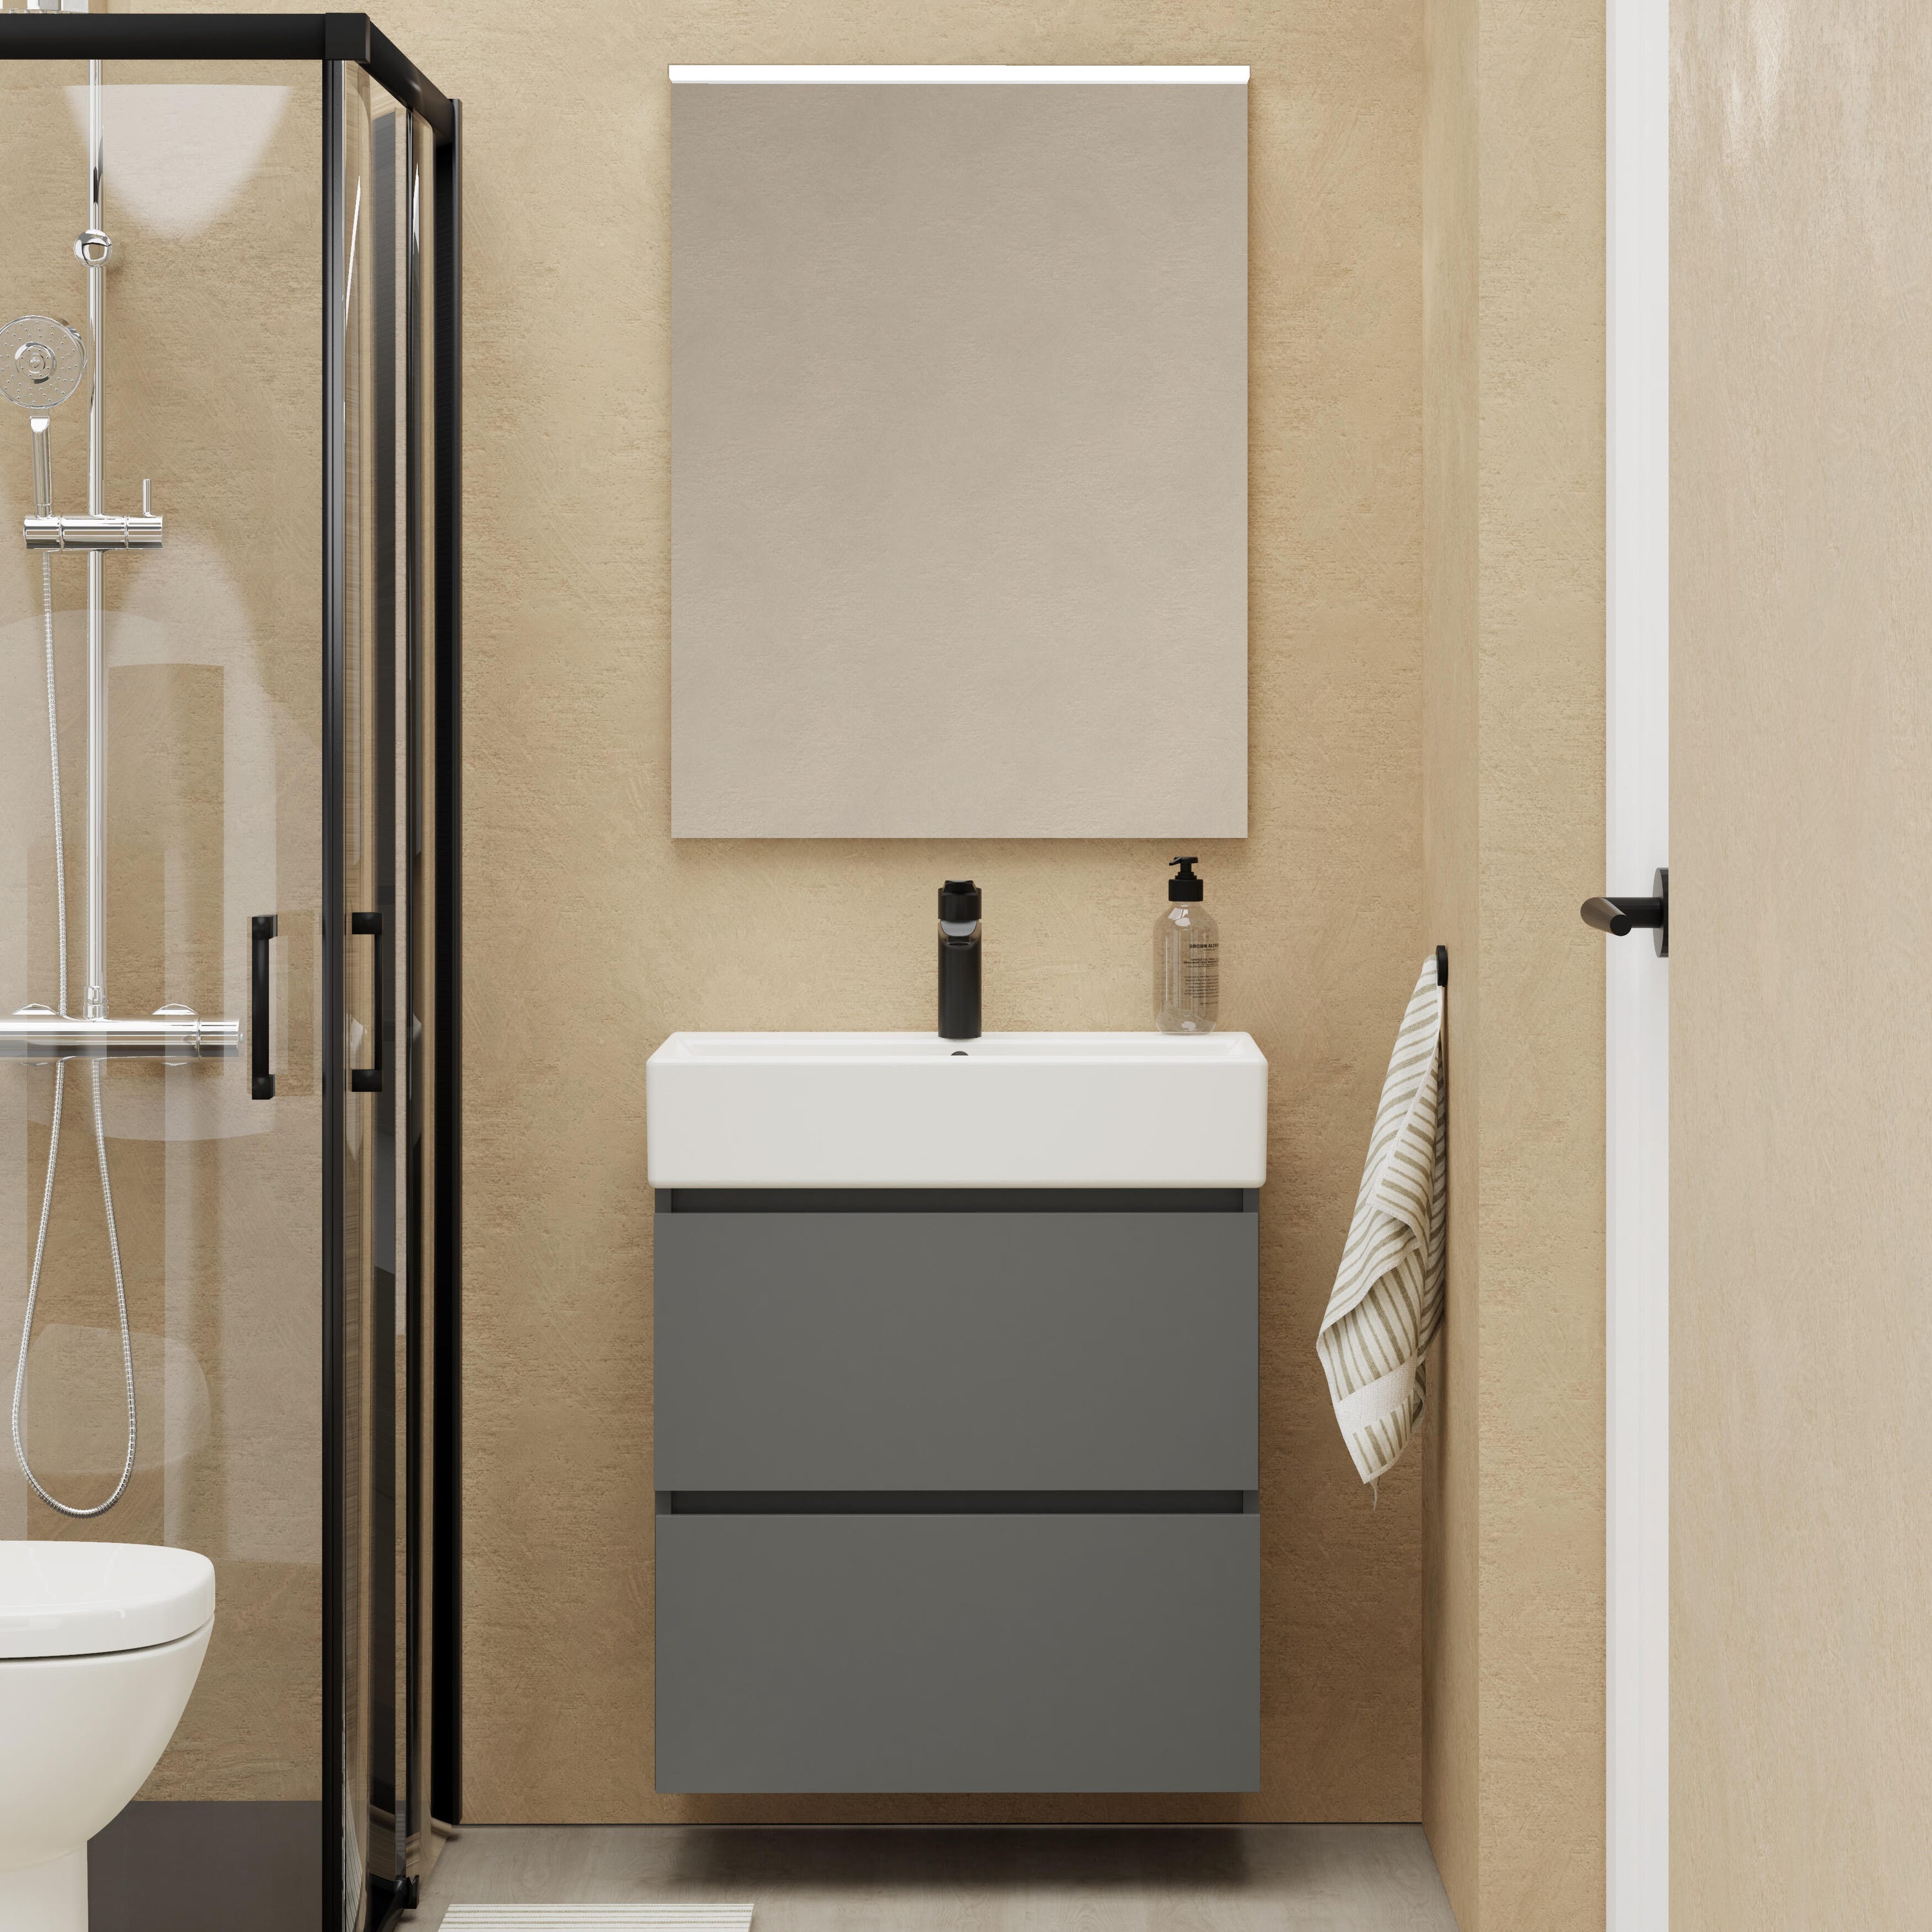 Mueble de baño con lavabo Espacio L gris oscuro 60x35 cm